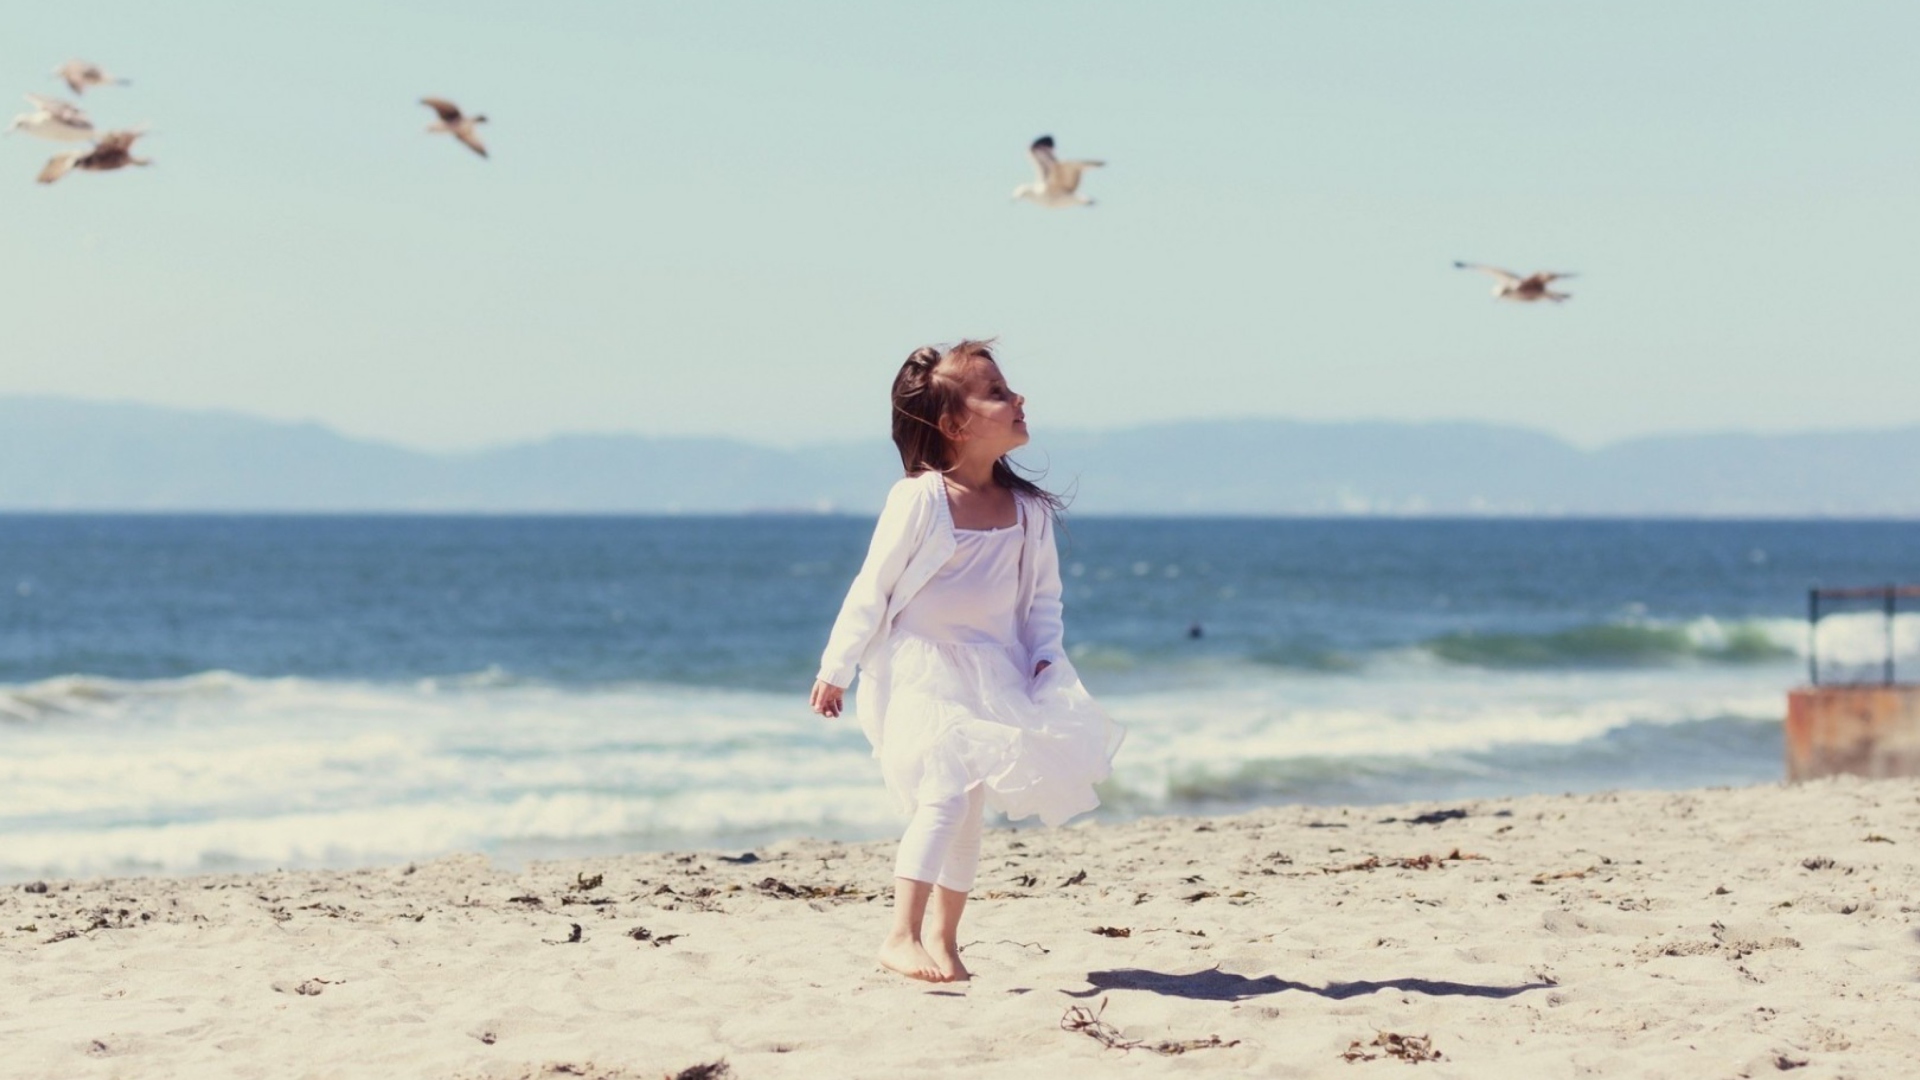 Little Girl And Seagulls On Beach screenshot #1 1920x1080